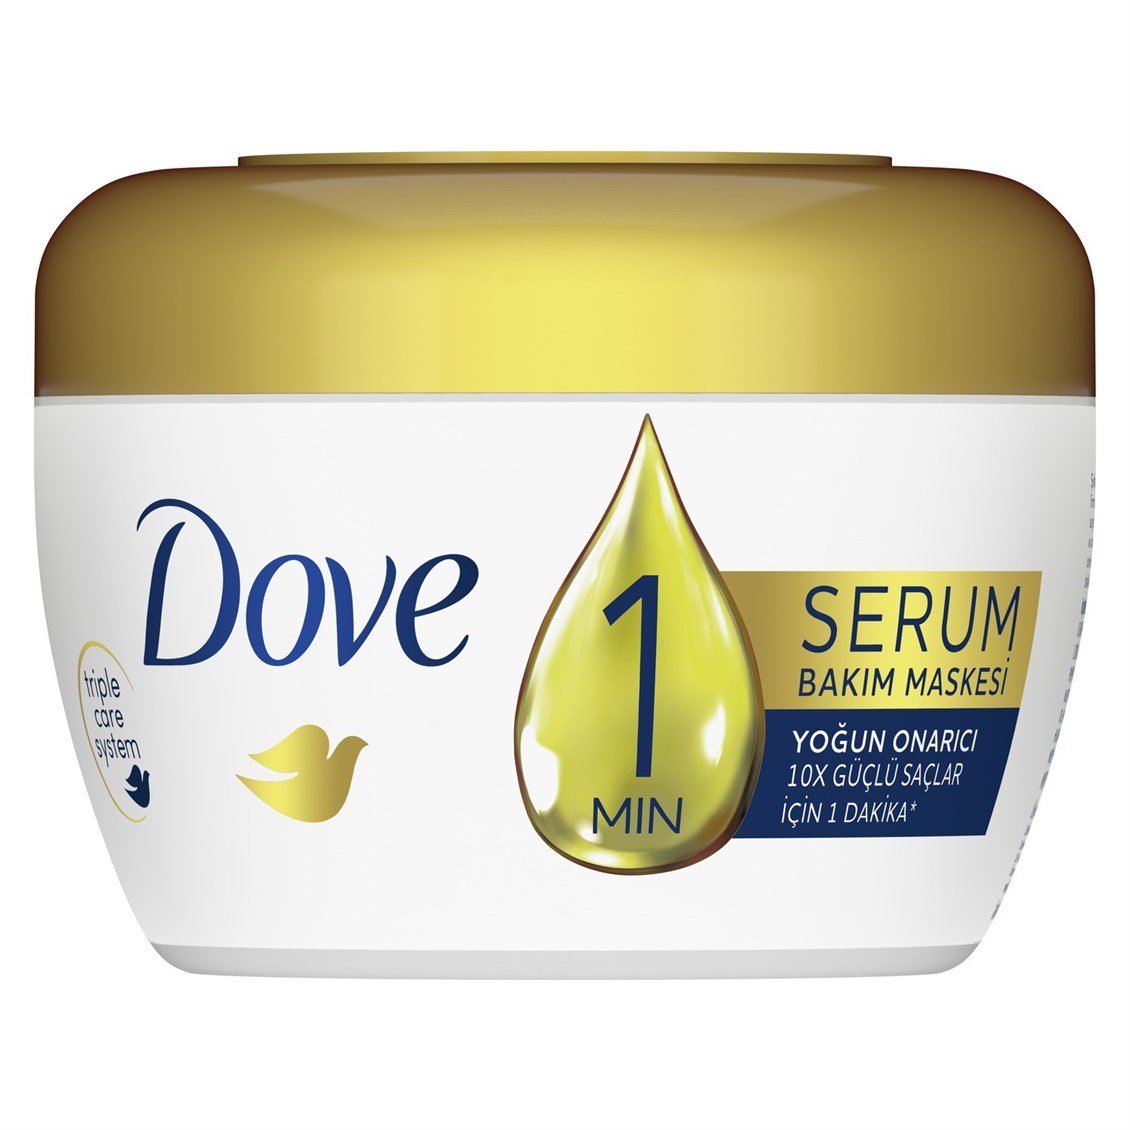 Dove 1 Minute Serum Saç Bakım Maskesi Yoğun Onarıcı 160 ml - Onur Market